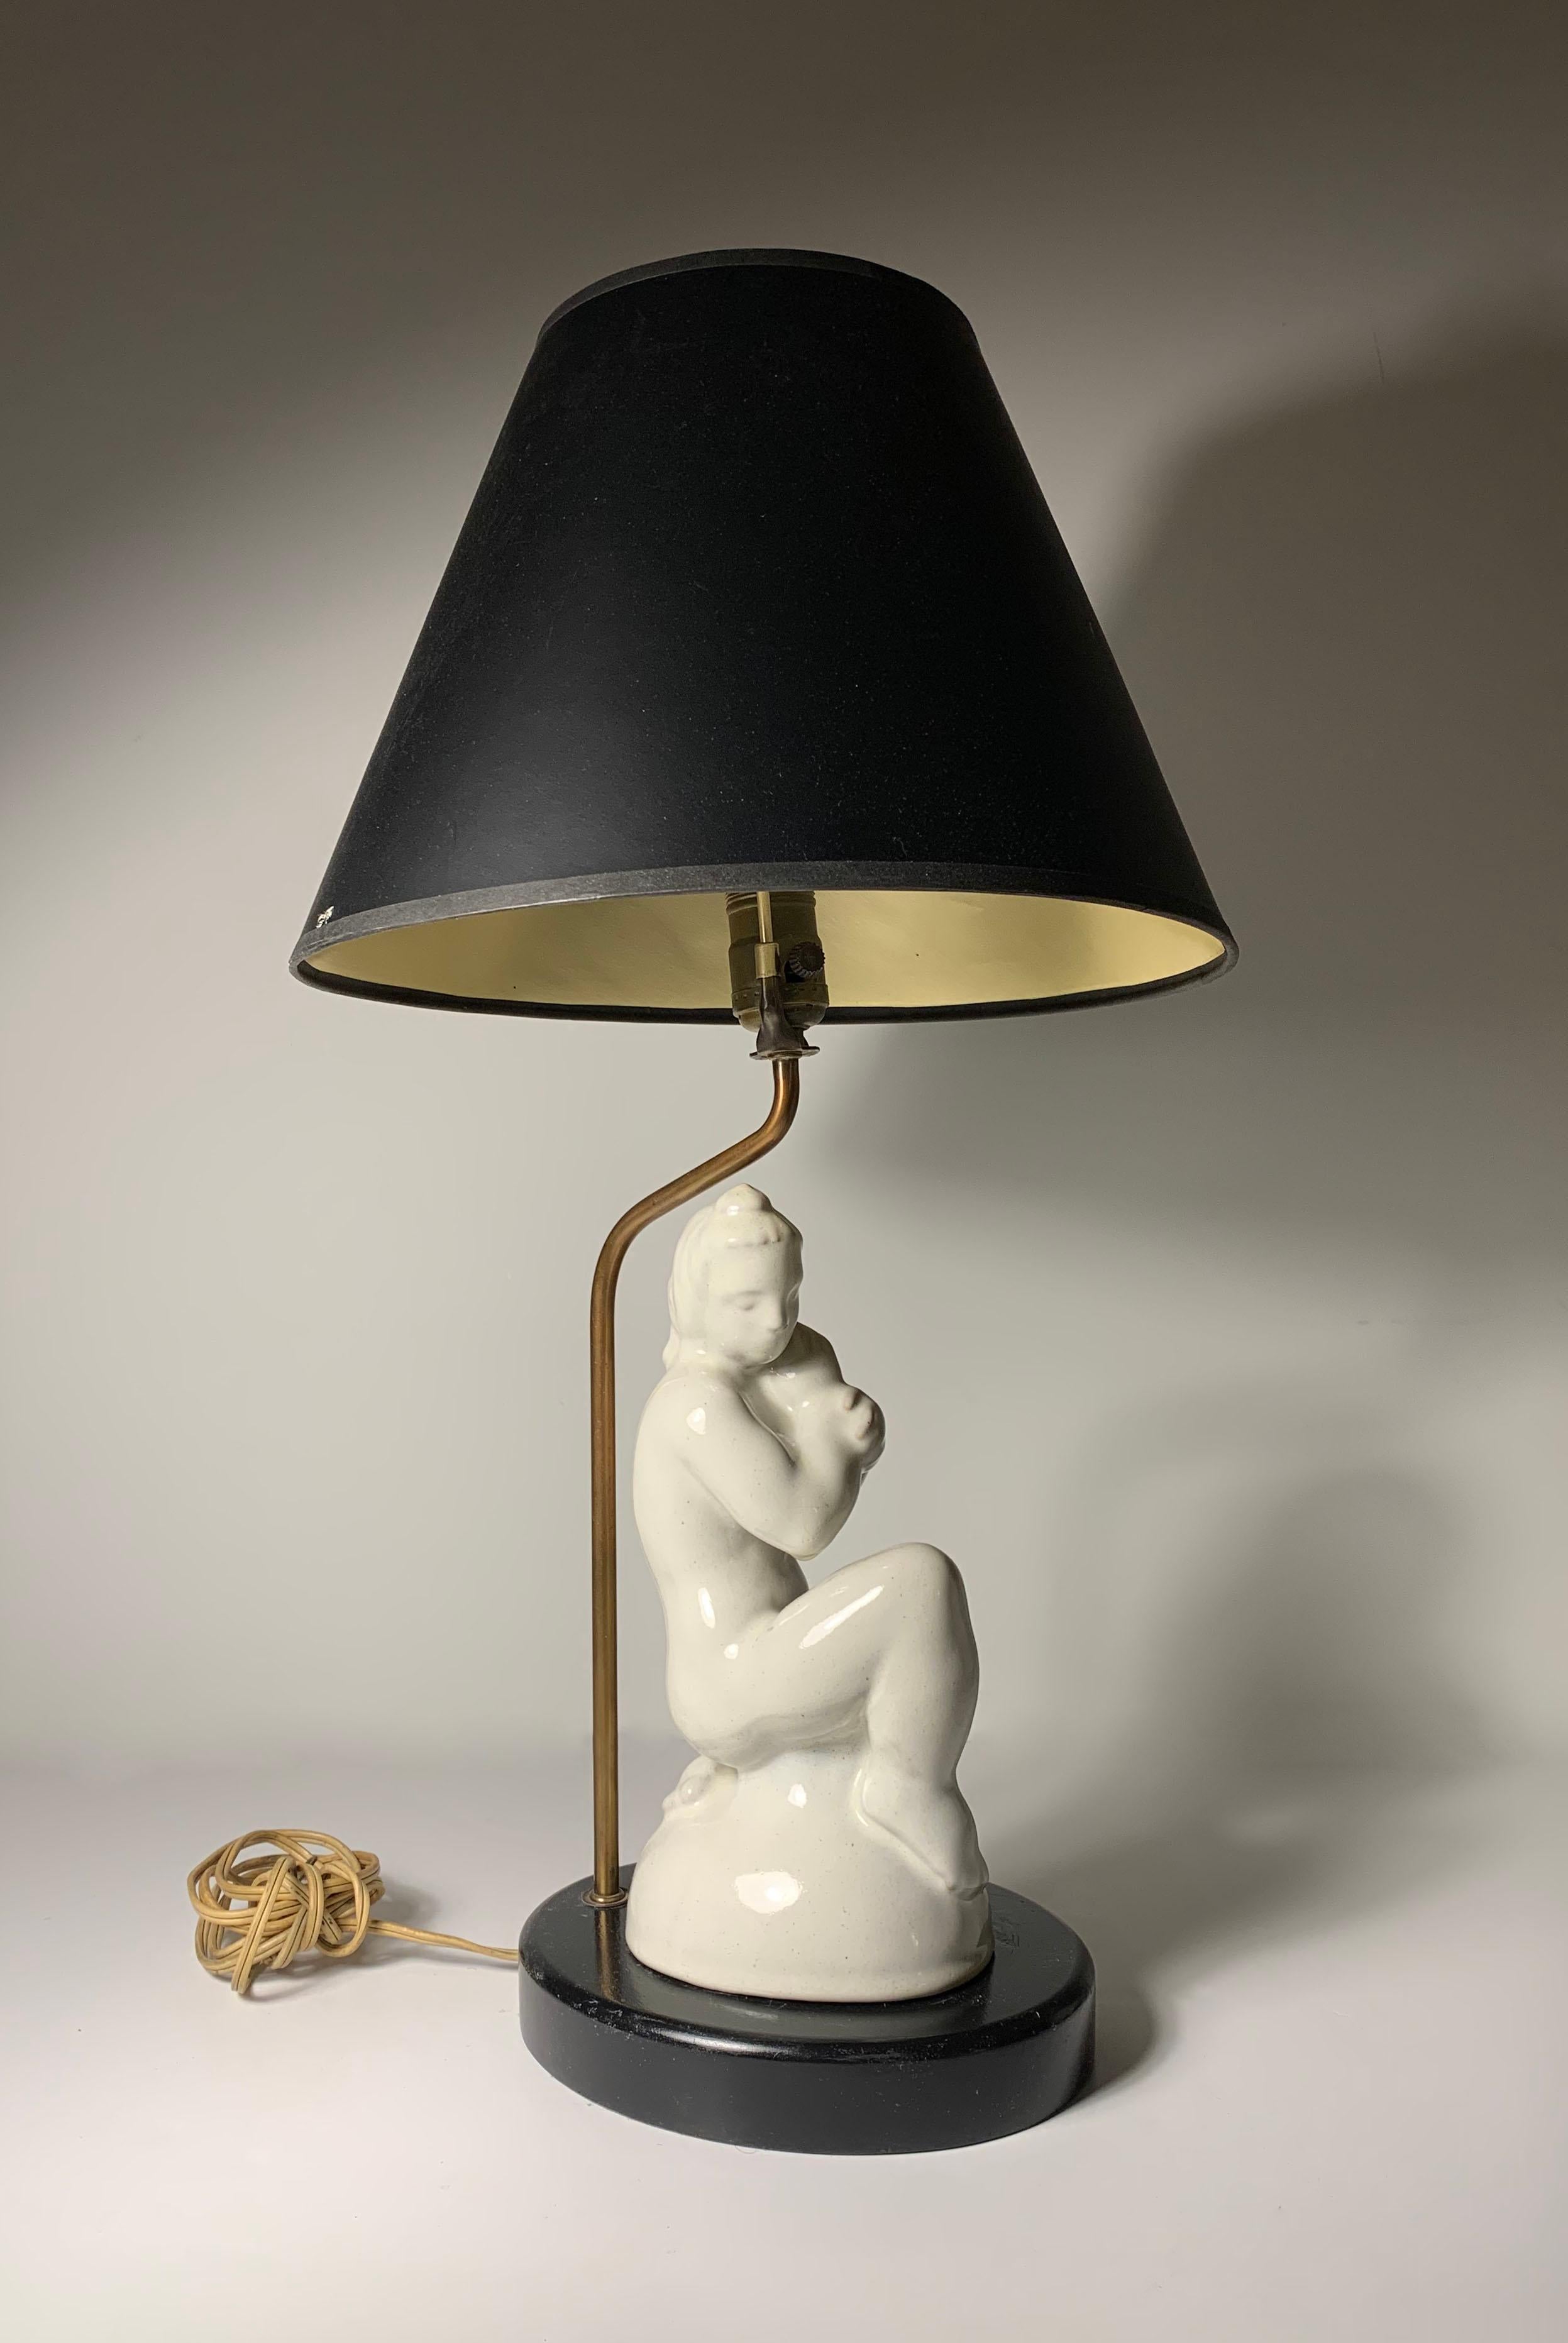 Intéressante lampe de table sculpturale en poterie. La céramique est autonome et dispose d'un clip pour la maintenir en place. Il est donc possible de retirer les parties de la lampe et de n'avoir que la sculpture. Origine et période incertaines. Il